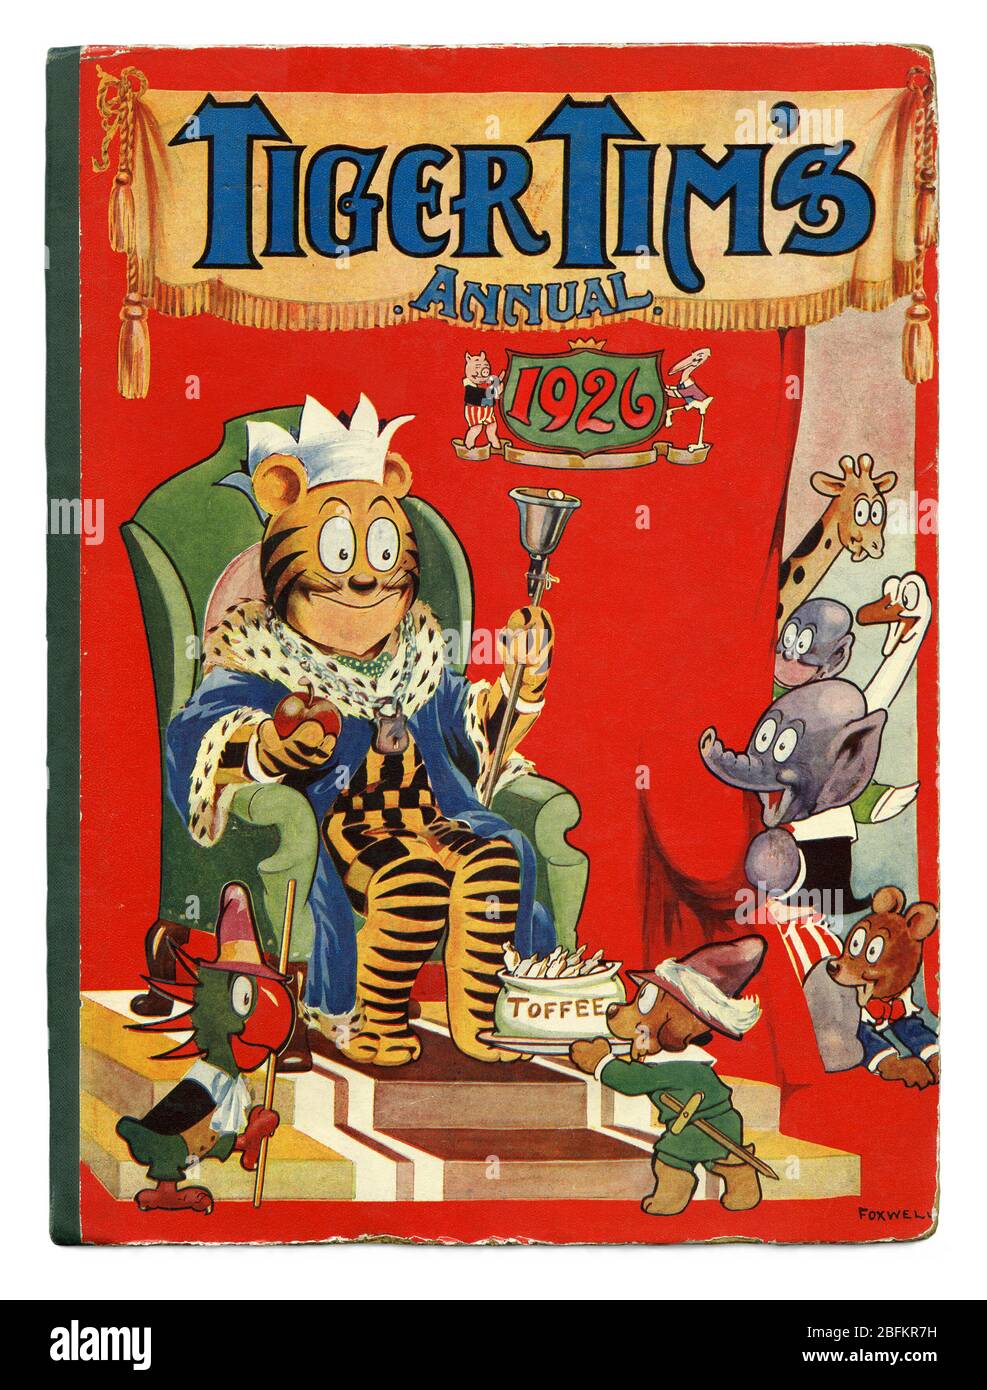 Couverture de l'année 1926 du tigre Tim publié par la presse fusionnée, Londres, Angleterre, Royaume-Uni. Les annuals comme celui-ci étaient souvent le cadeau de Noël de base d'une enfance d'entre-guerre britannique. Julius Stafford Baker, illustrateur anglais, a créé la série de dessins animés Tiger Tim dans les années 1890. Il a été si réussi qu'en 1920 il a gagné son propre journal pour enfants, Tiger Tim's Weekly (également appelé Rainbow). L'artiste Herbert Foxwell a illustré la couverture de cette année 1926 avec Tiger Tim comme King offert des toffees. Le joueur de tennis britannique Tim Henman était surnommé « Tiger Tim ». Banque D'Images